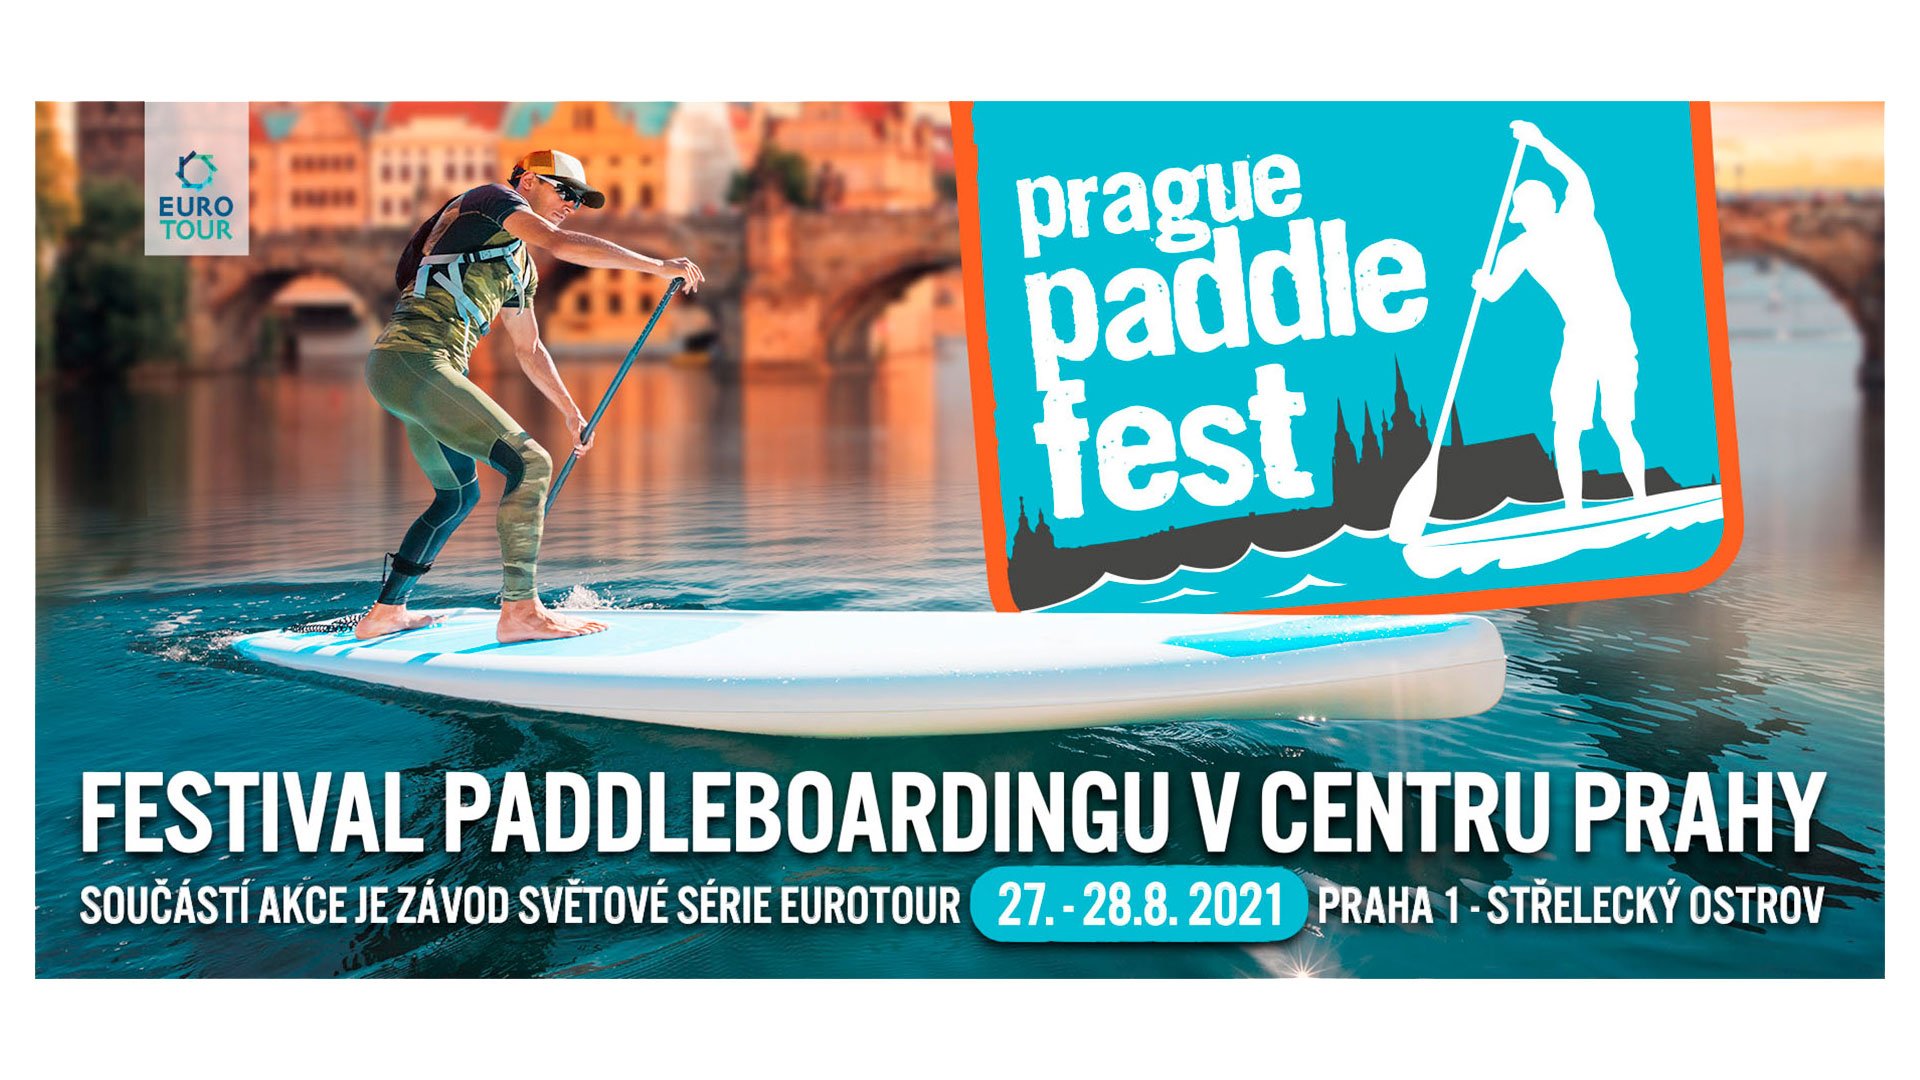 PRAGUE PADDLE FEST 2021 - Praha